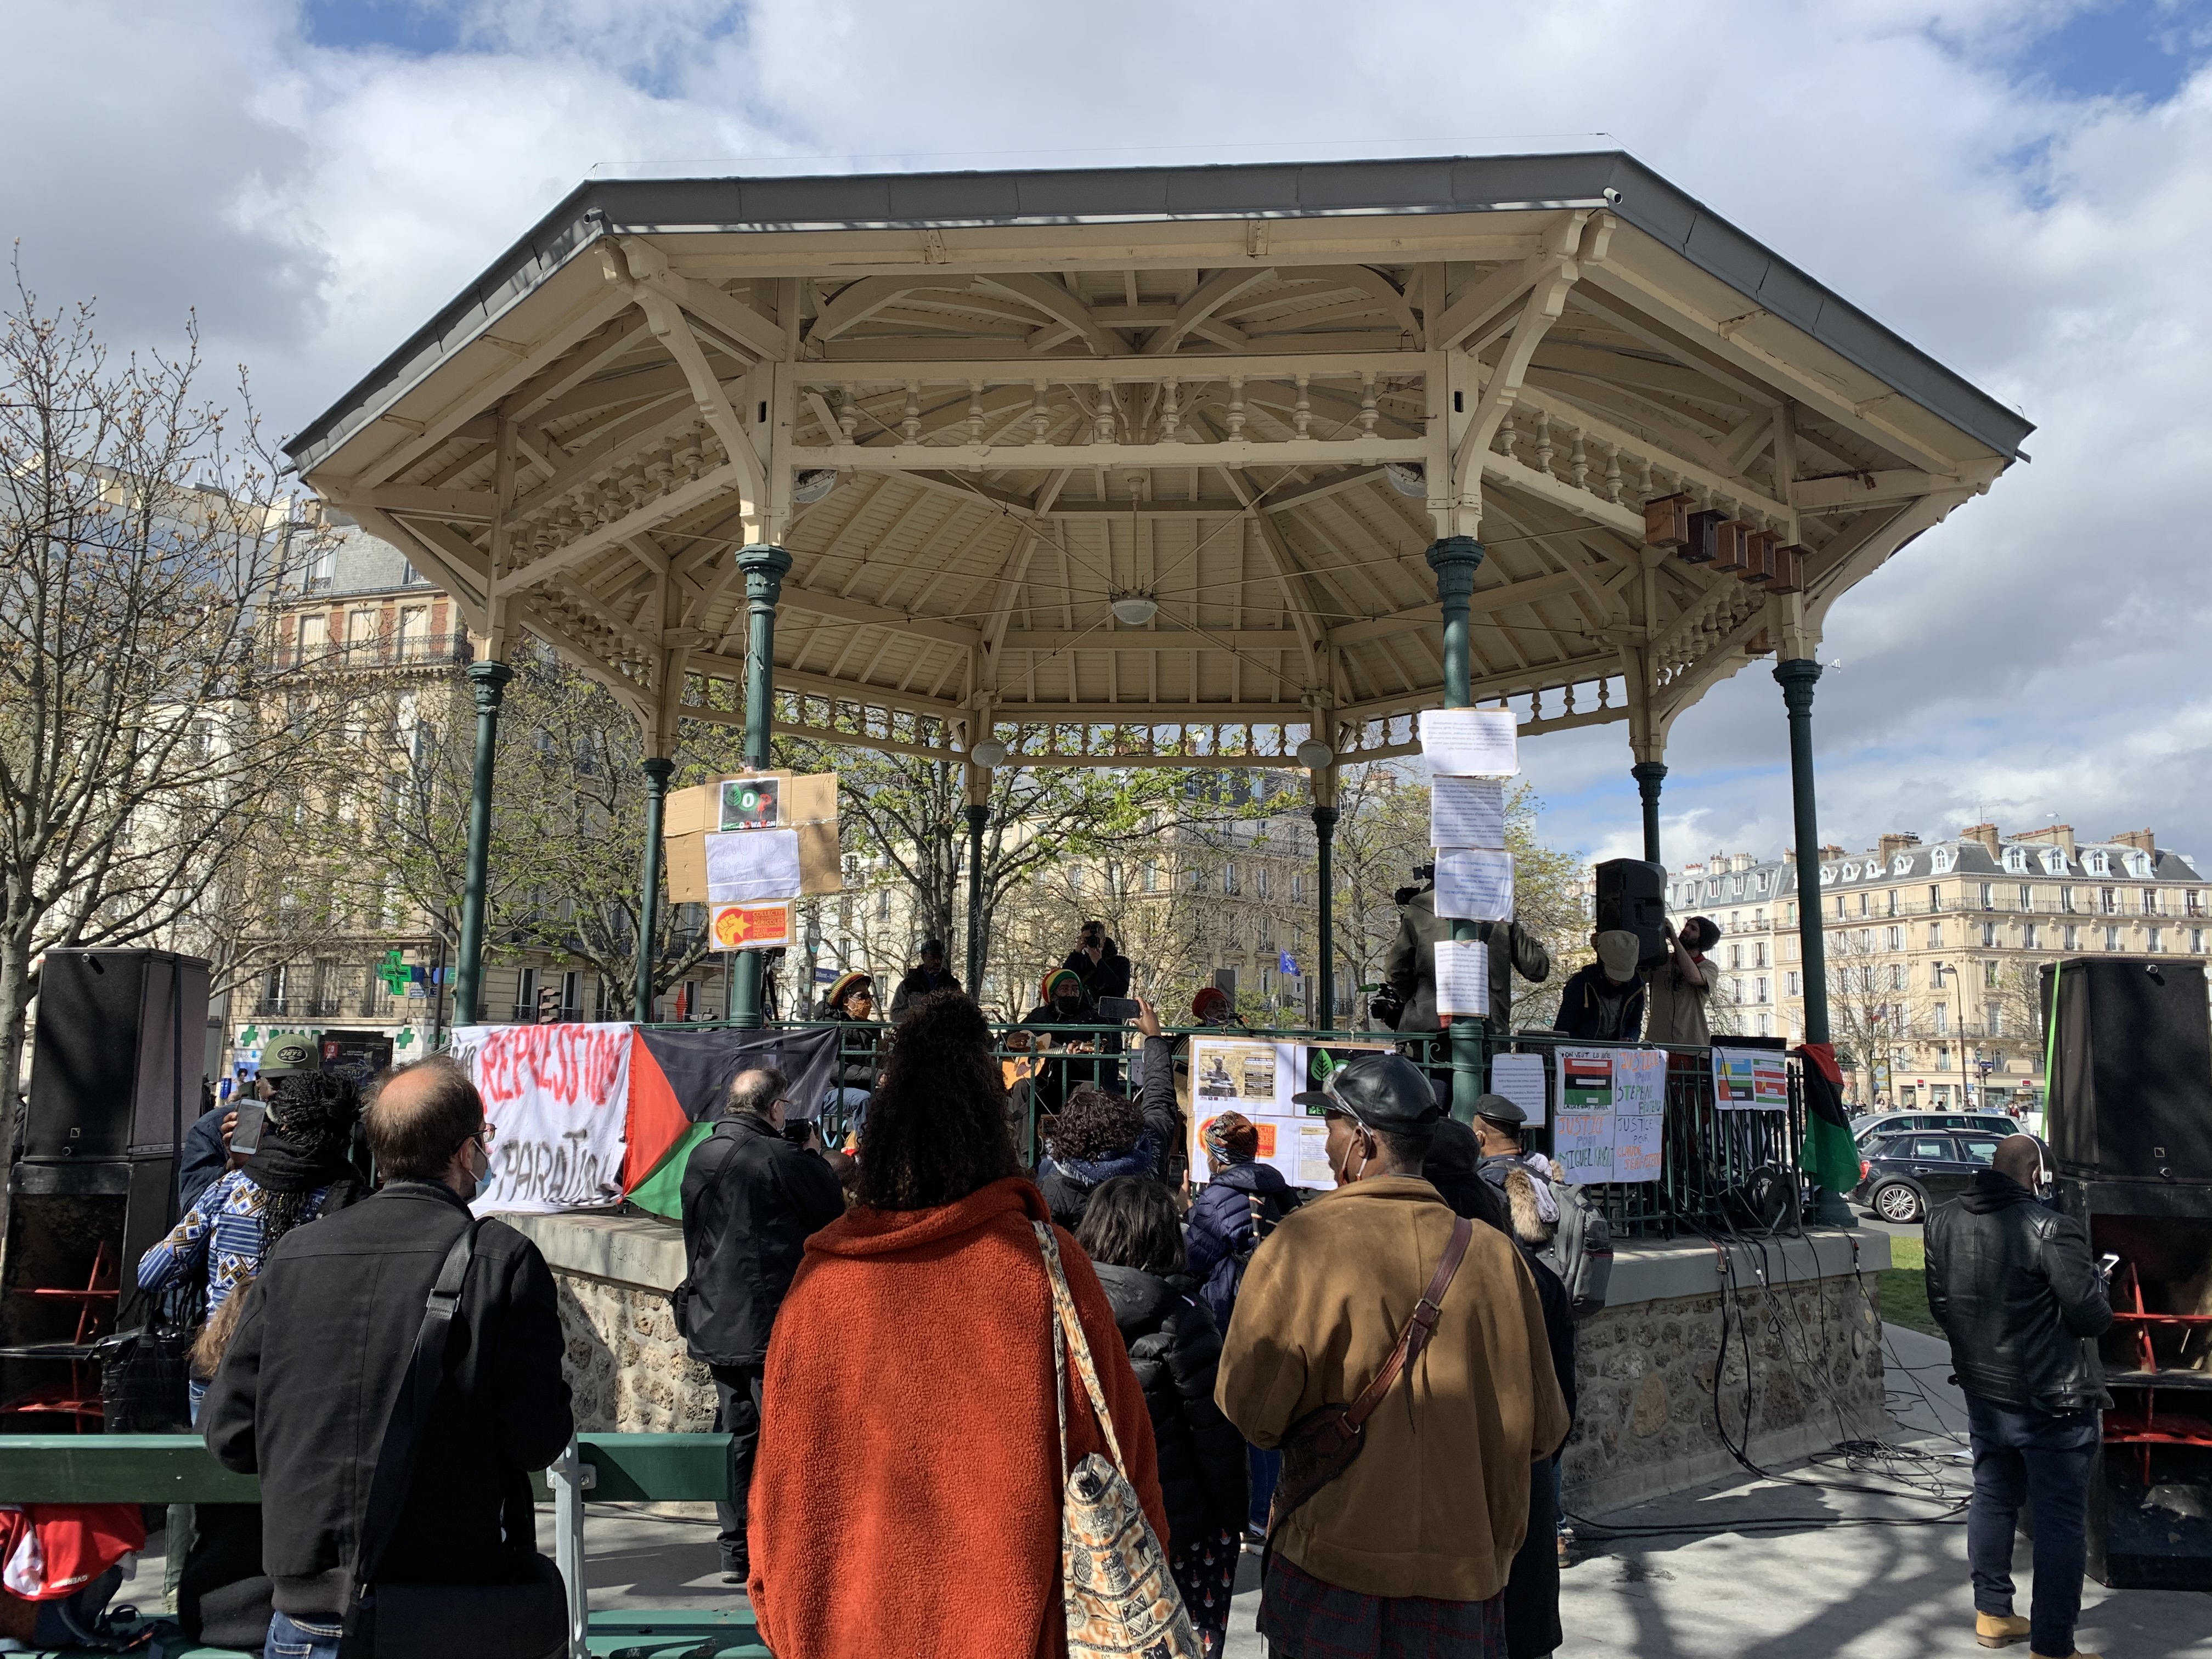     Paris : une manifestation en soutien aux ouvriers agricoles

